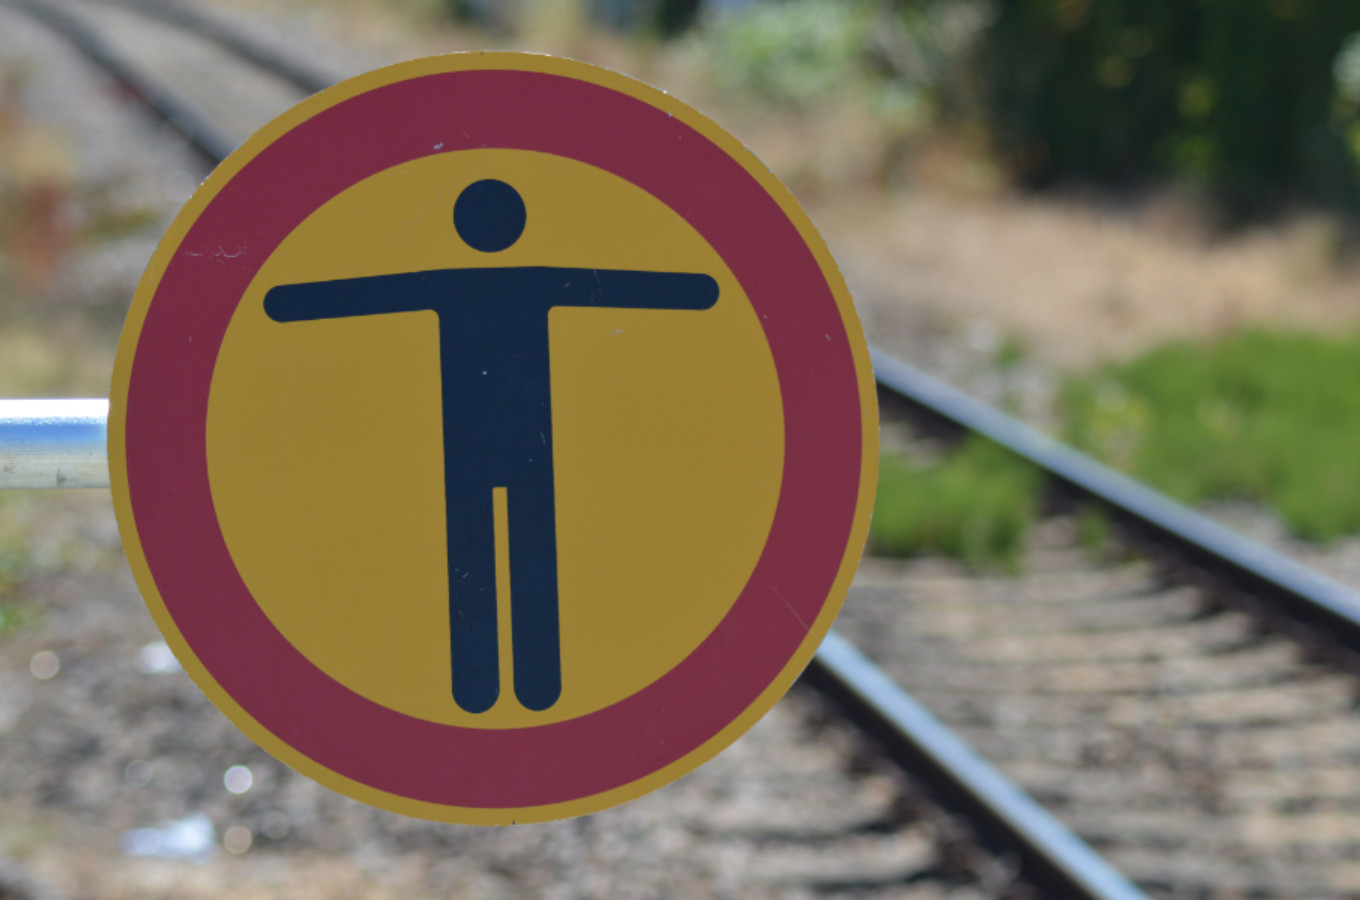 Der Aufenthalt innerhalb der Gleise ist nicht gestattet  - § 62 Abs. 2 EBO. (Foto: © Bahnblogstelle)